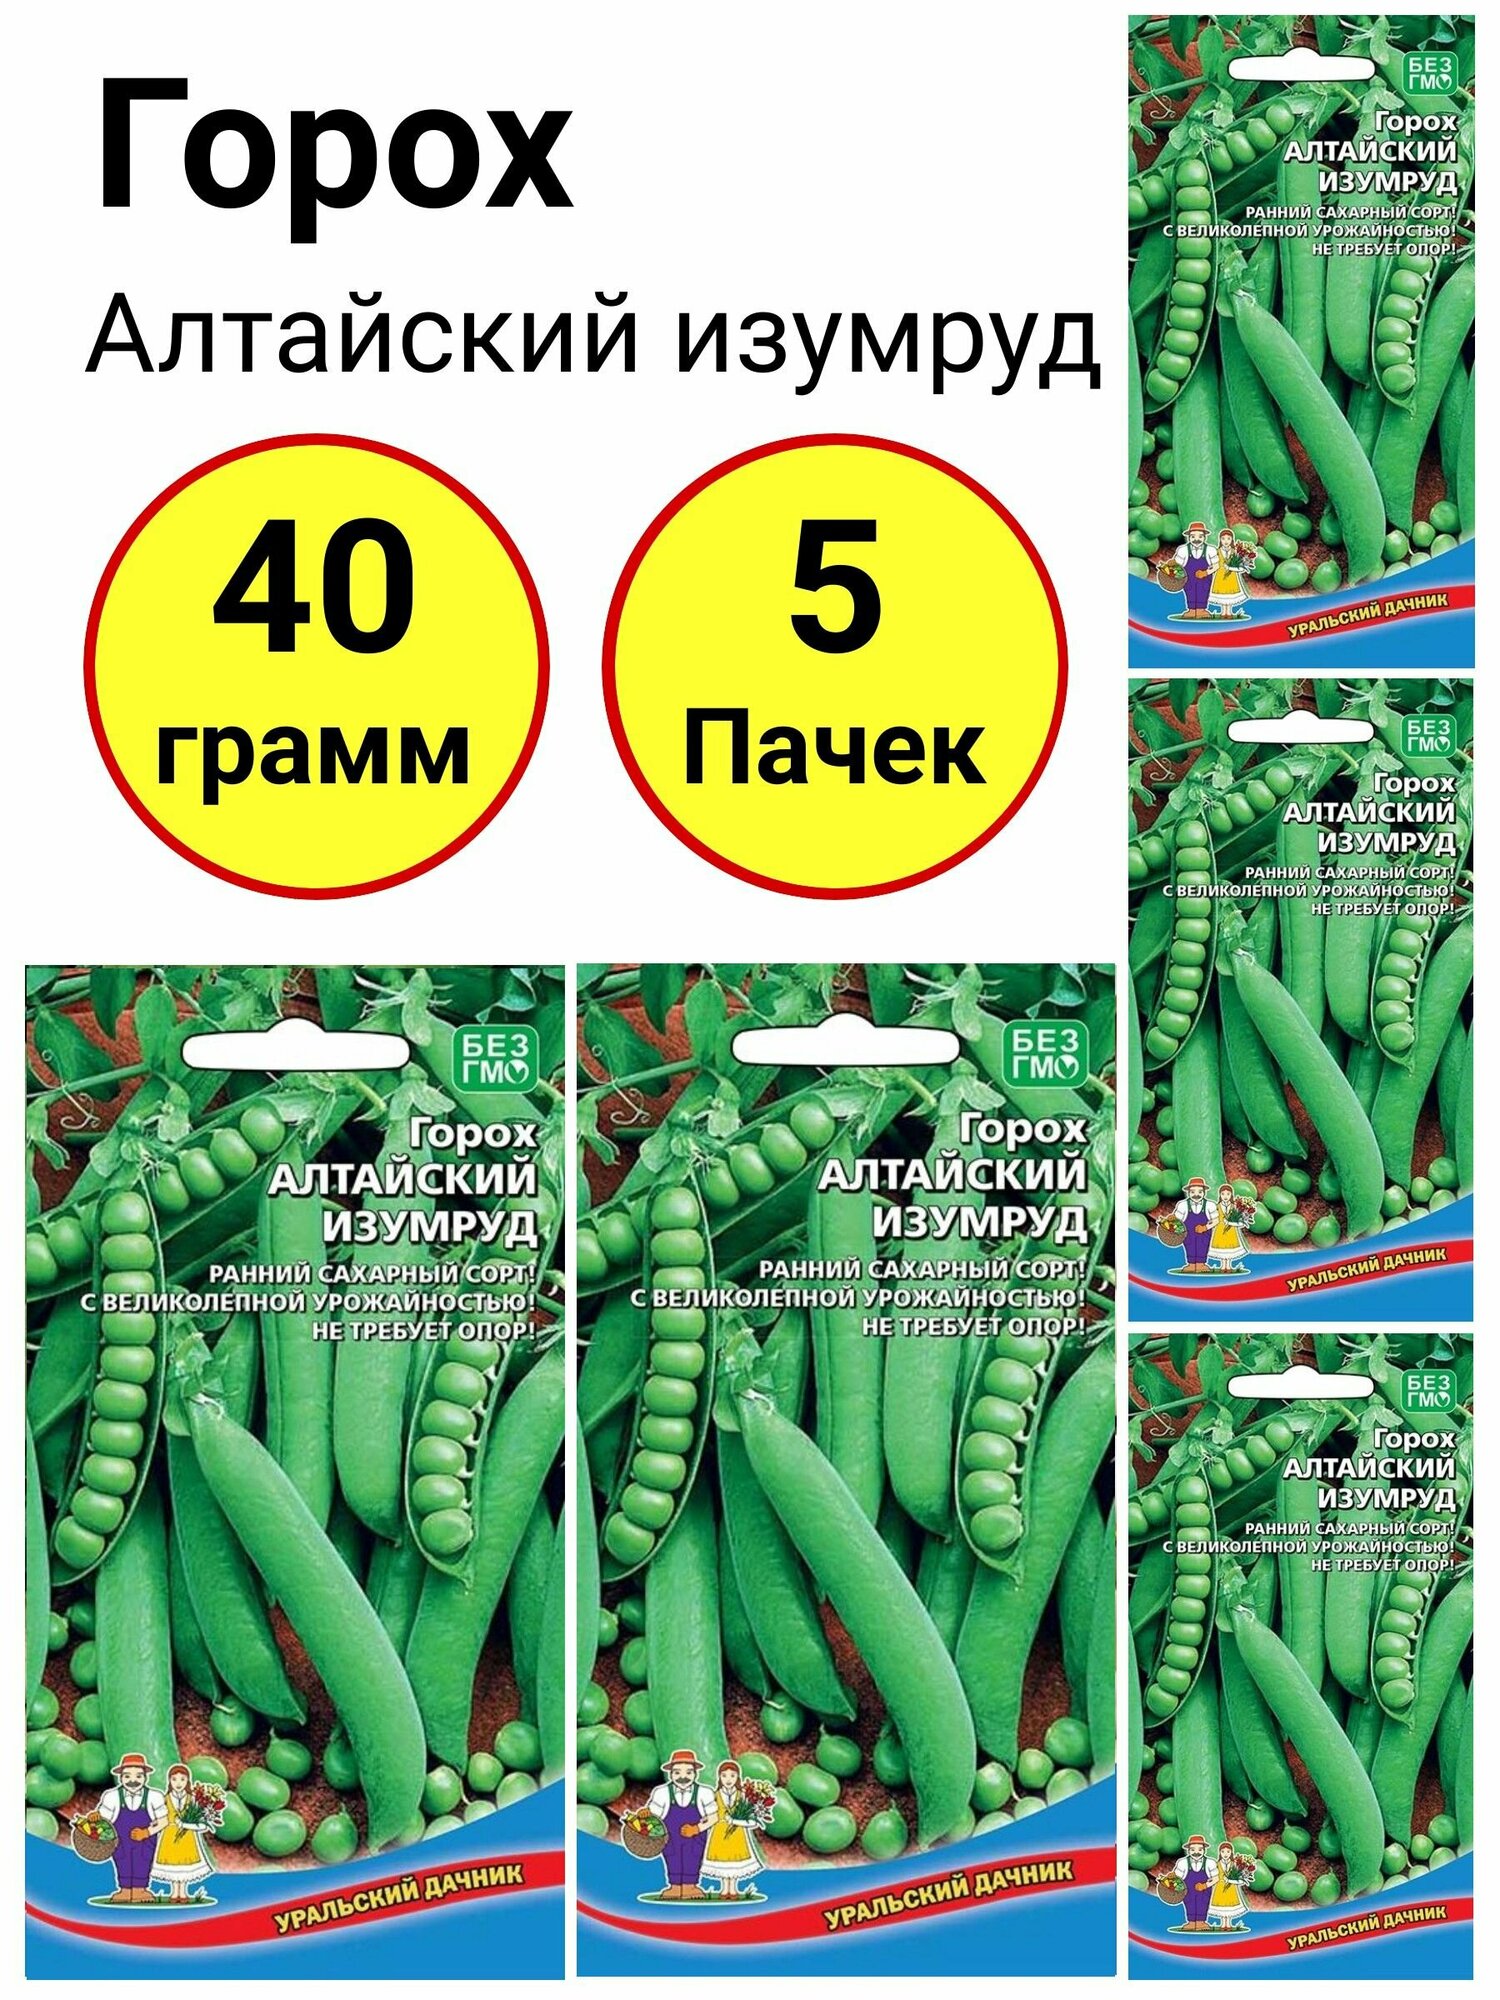 Горох Алтайский изумруд 8 грамм Уральский дачник - 5 пачек